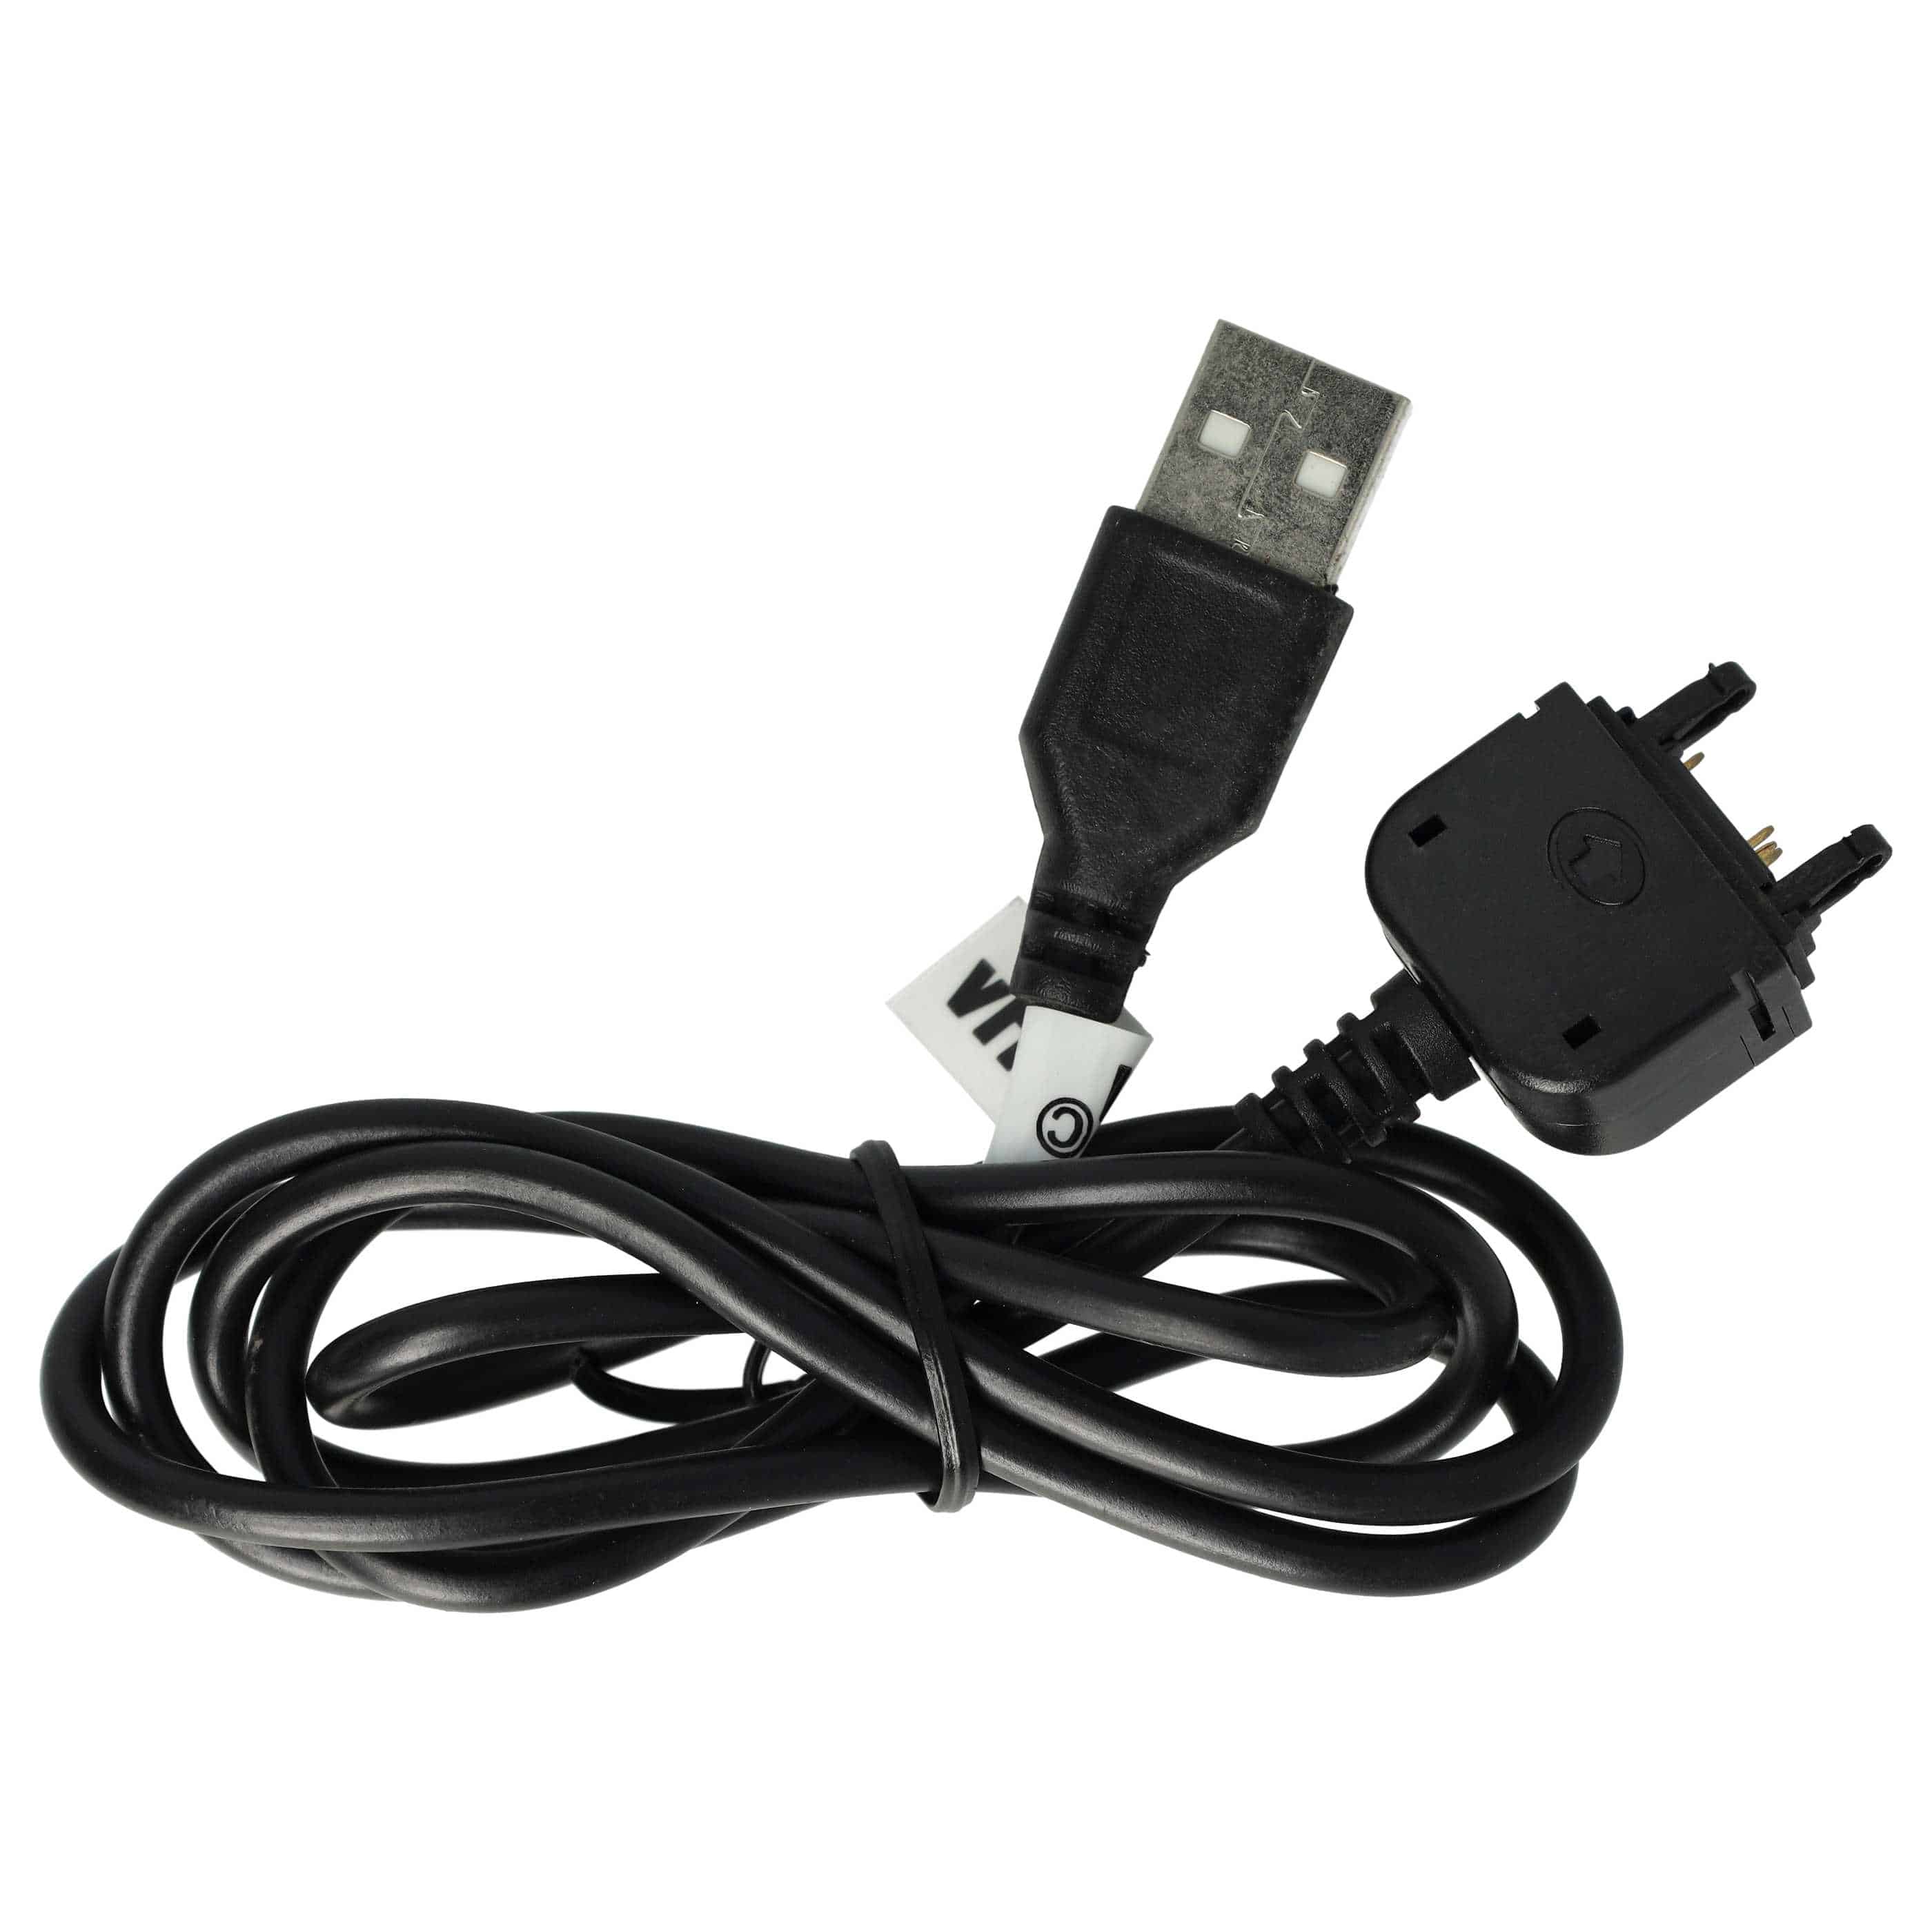 USB Datenkabel als Ersatz für Sony DCU-60 für Sony Ericsson Handy